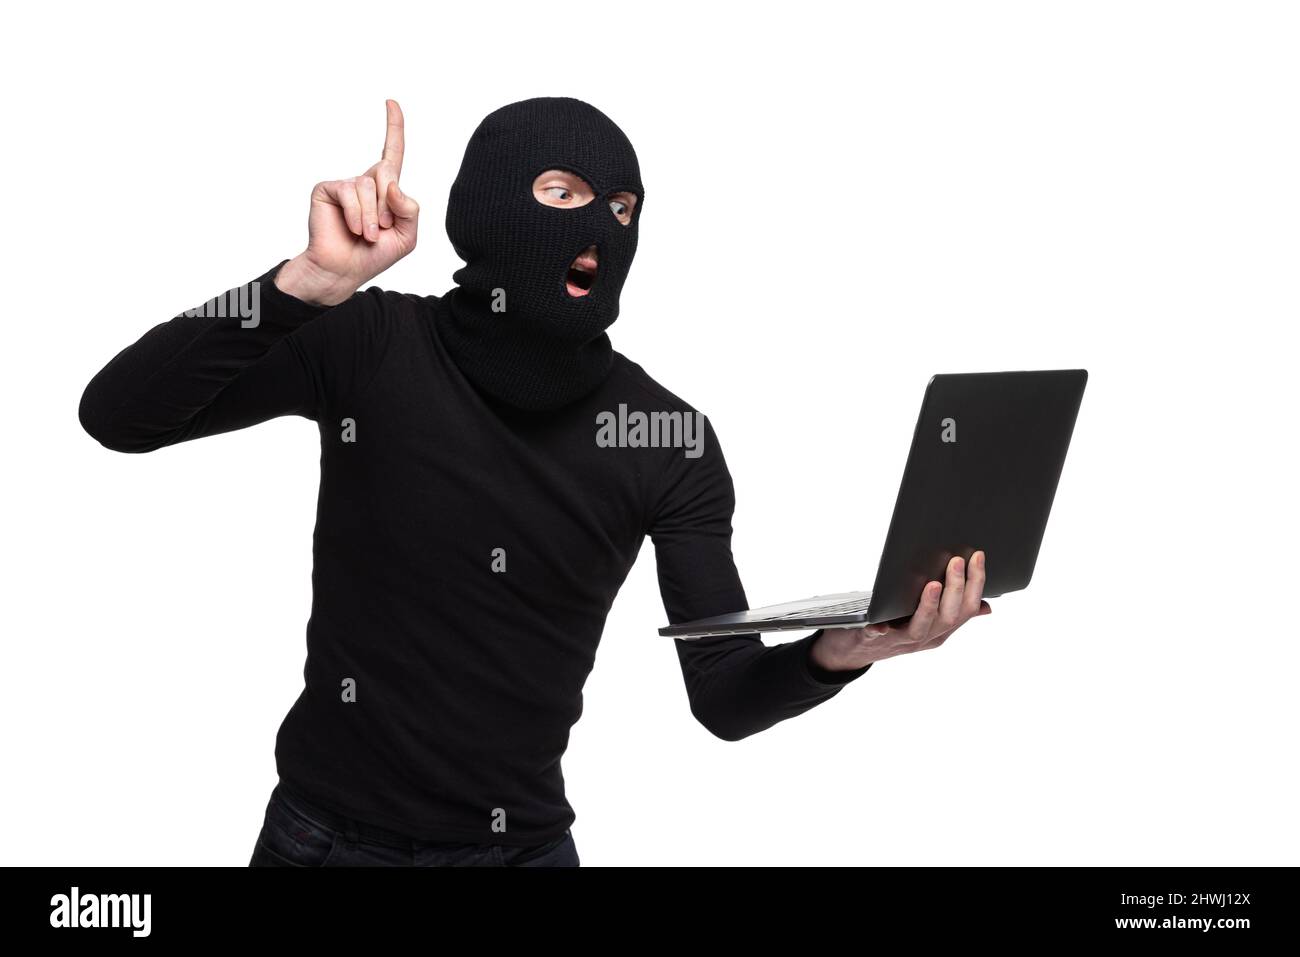 Portrait d'une jeune personne anonyme vêtue d'une tenue noire et d'une balaclava isolée sur fond blanc. Concept d'art, de mode, d'anti-terrorism Banque D'Images